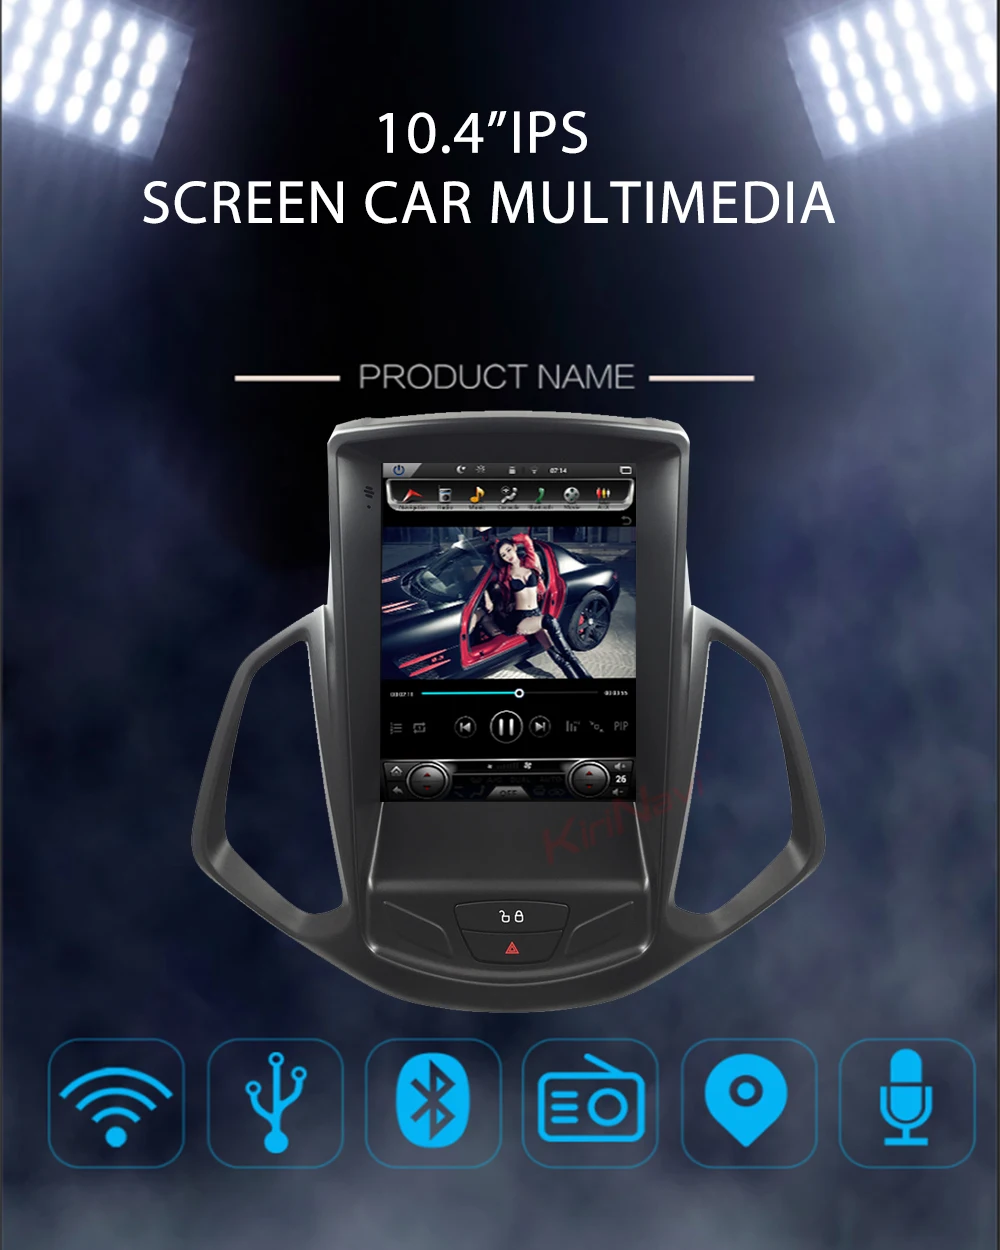 KiriNavi вертикальный экран Tesla стиль Android 8,1 10,4 ''автомобильное радио gps навигация для Ford Ecosport автомобильный Dvd мультимедиа 2013